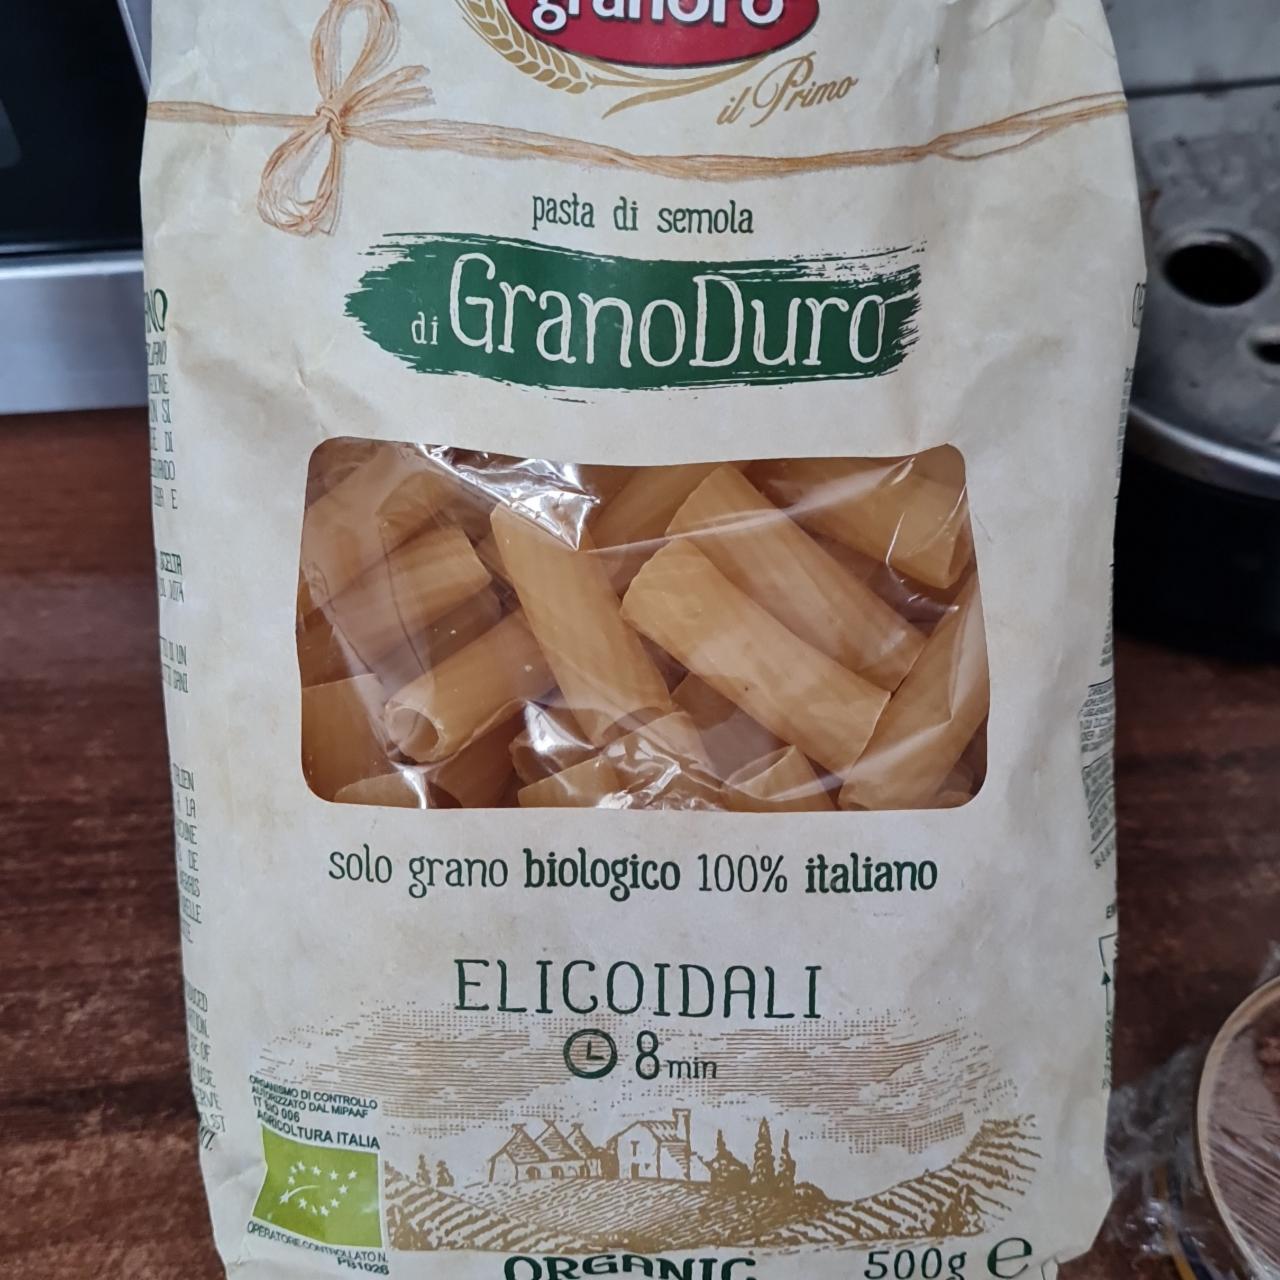 Фото - паста трубочки Biо pasta di semolao Granoro